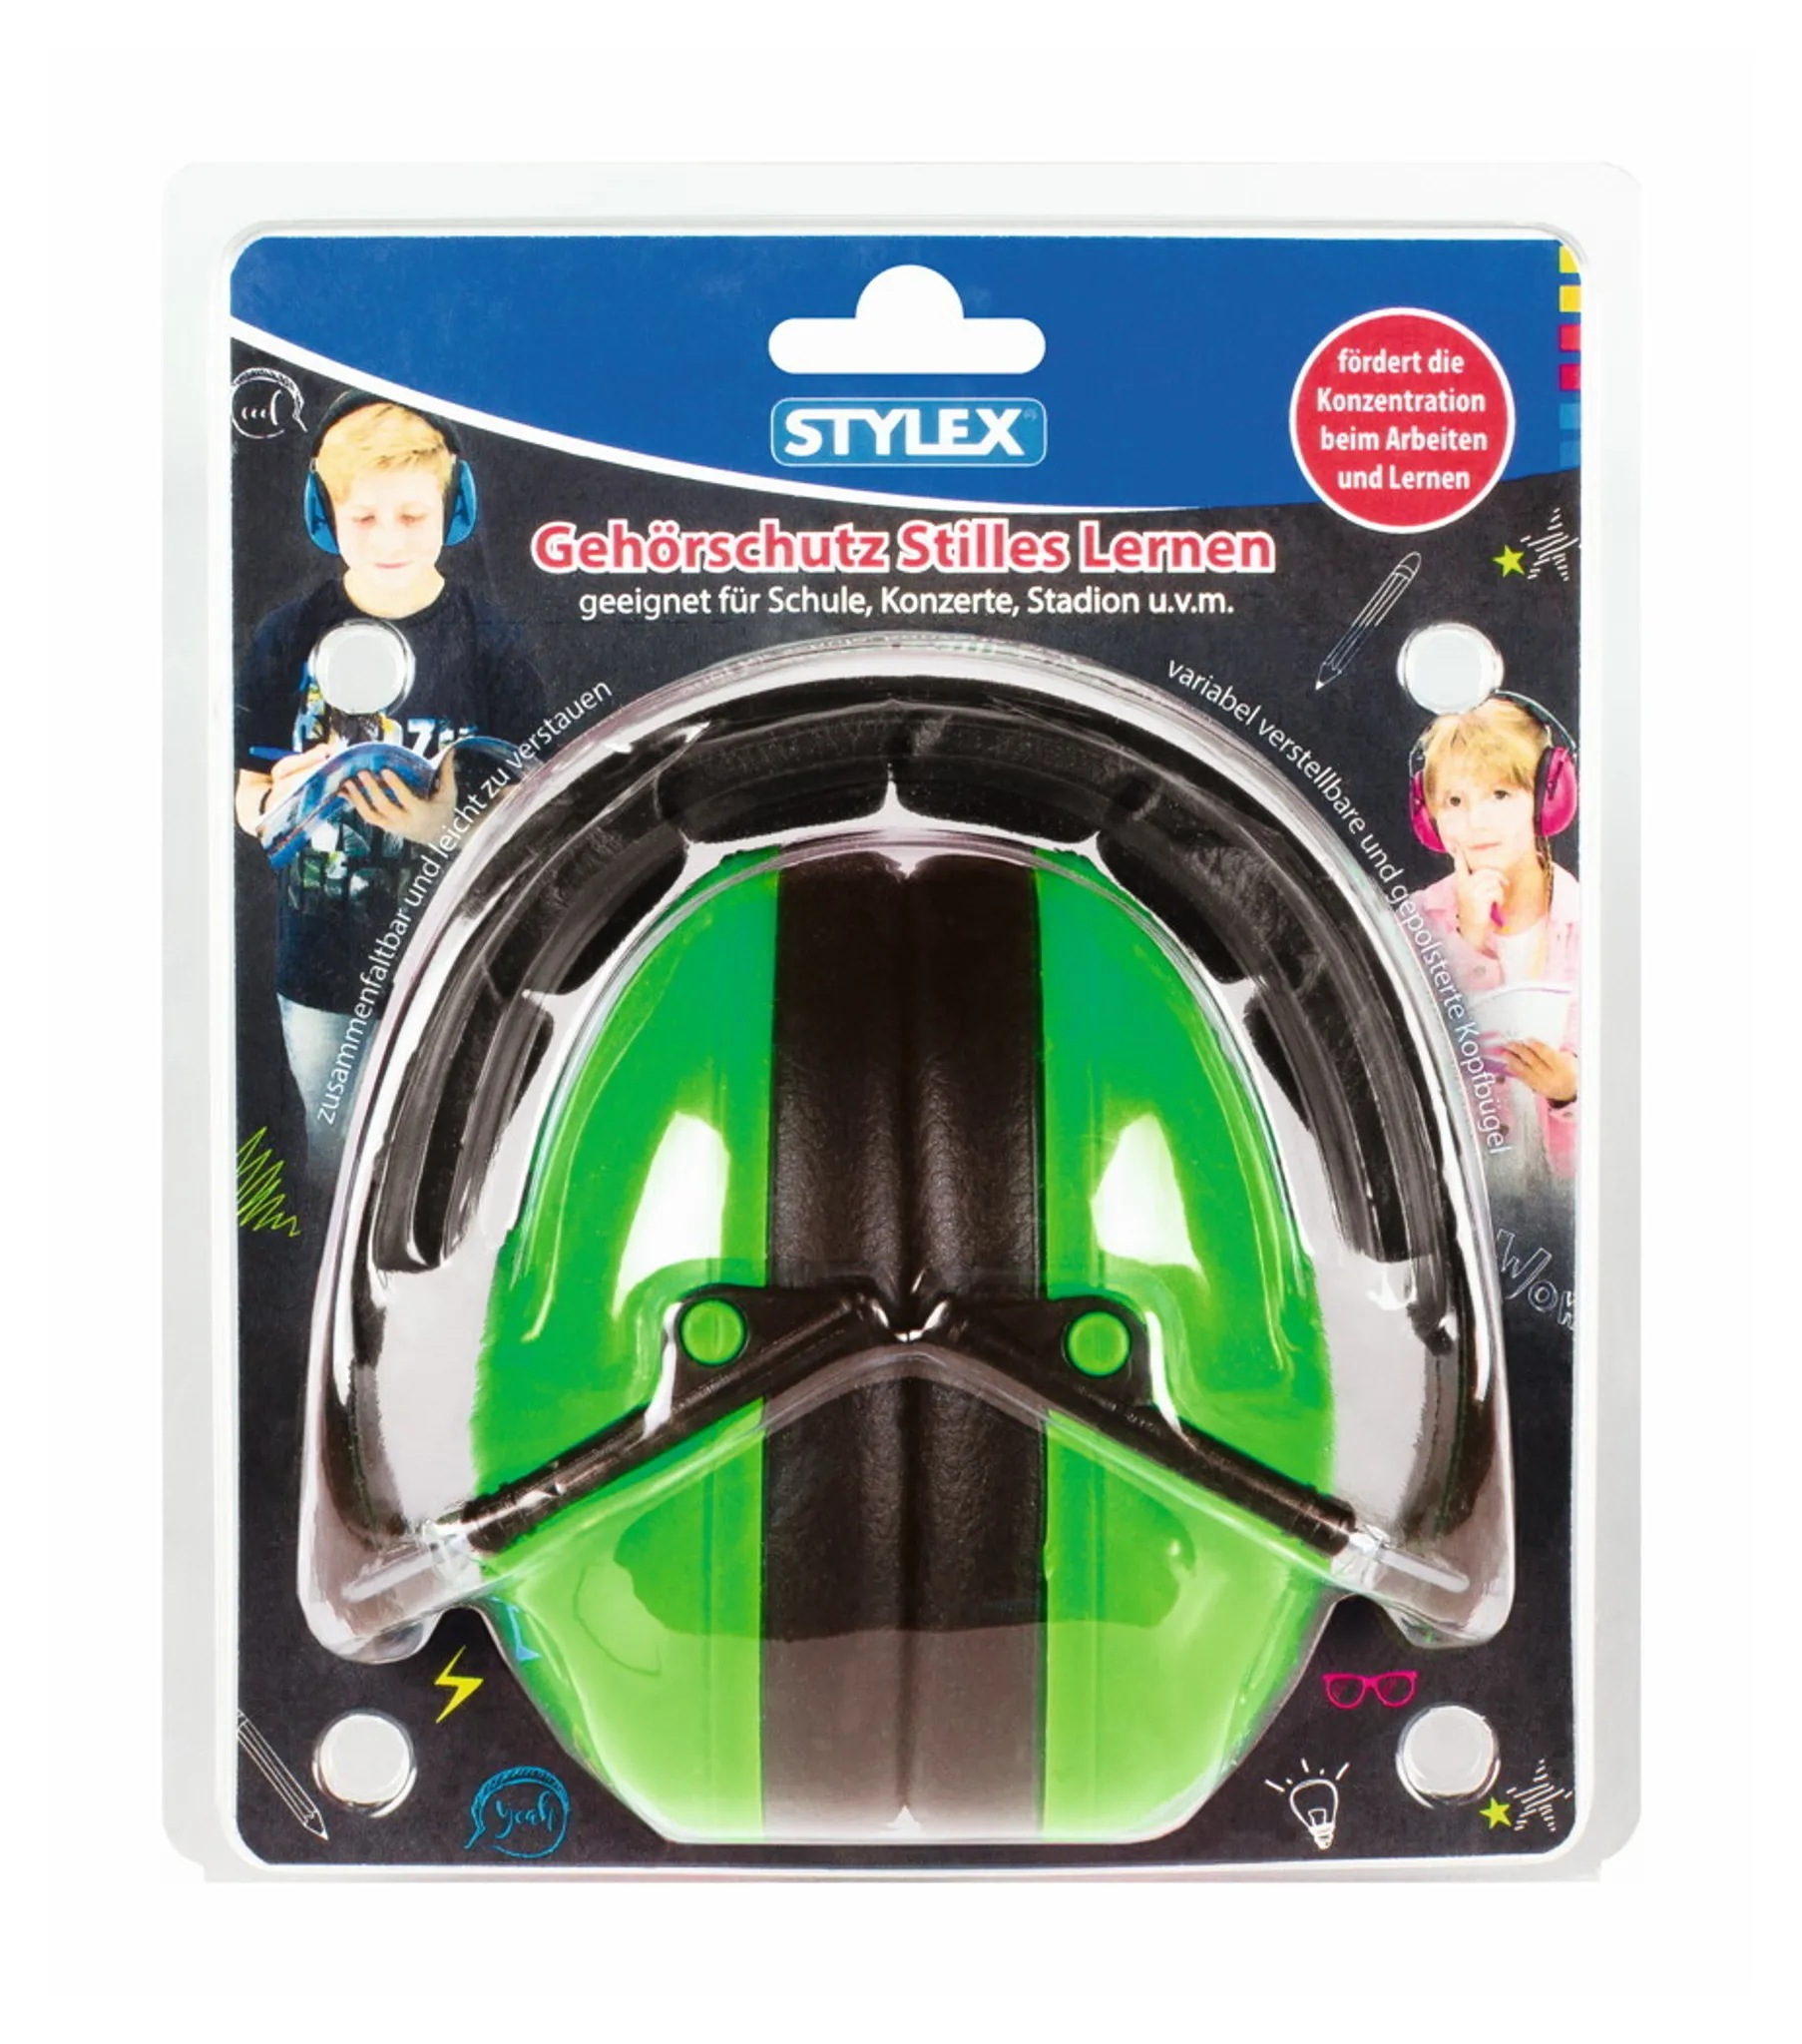 Stylex Gehörschutz, Stilles Lernen, SX-4230